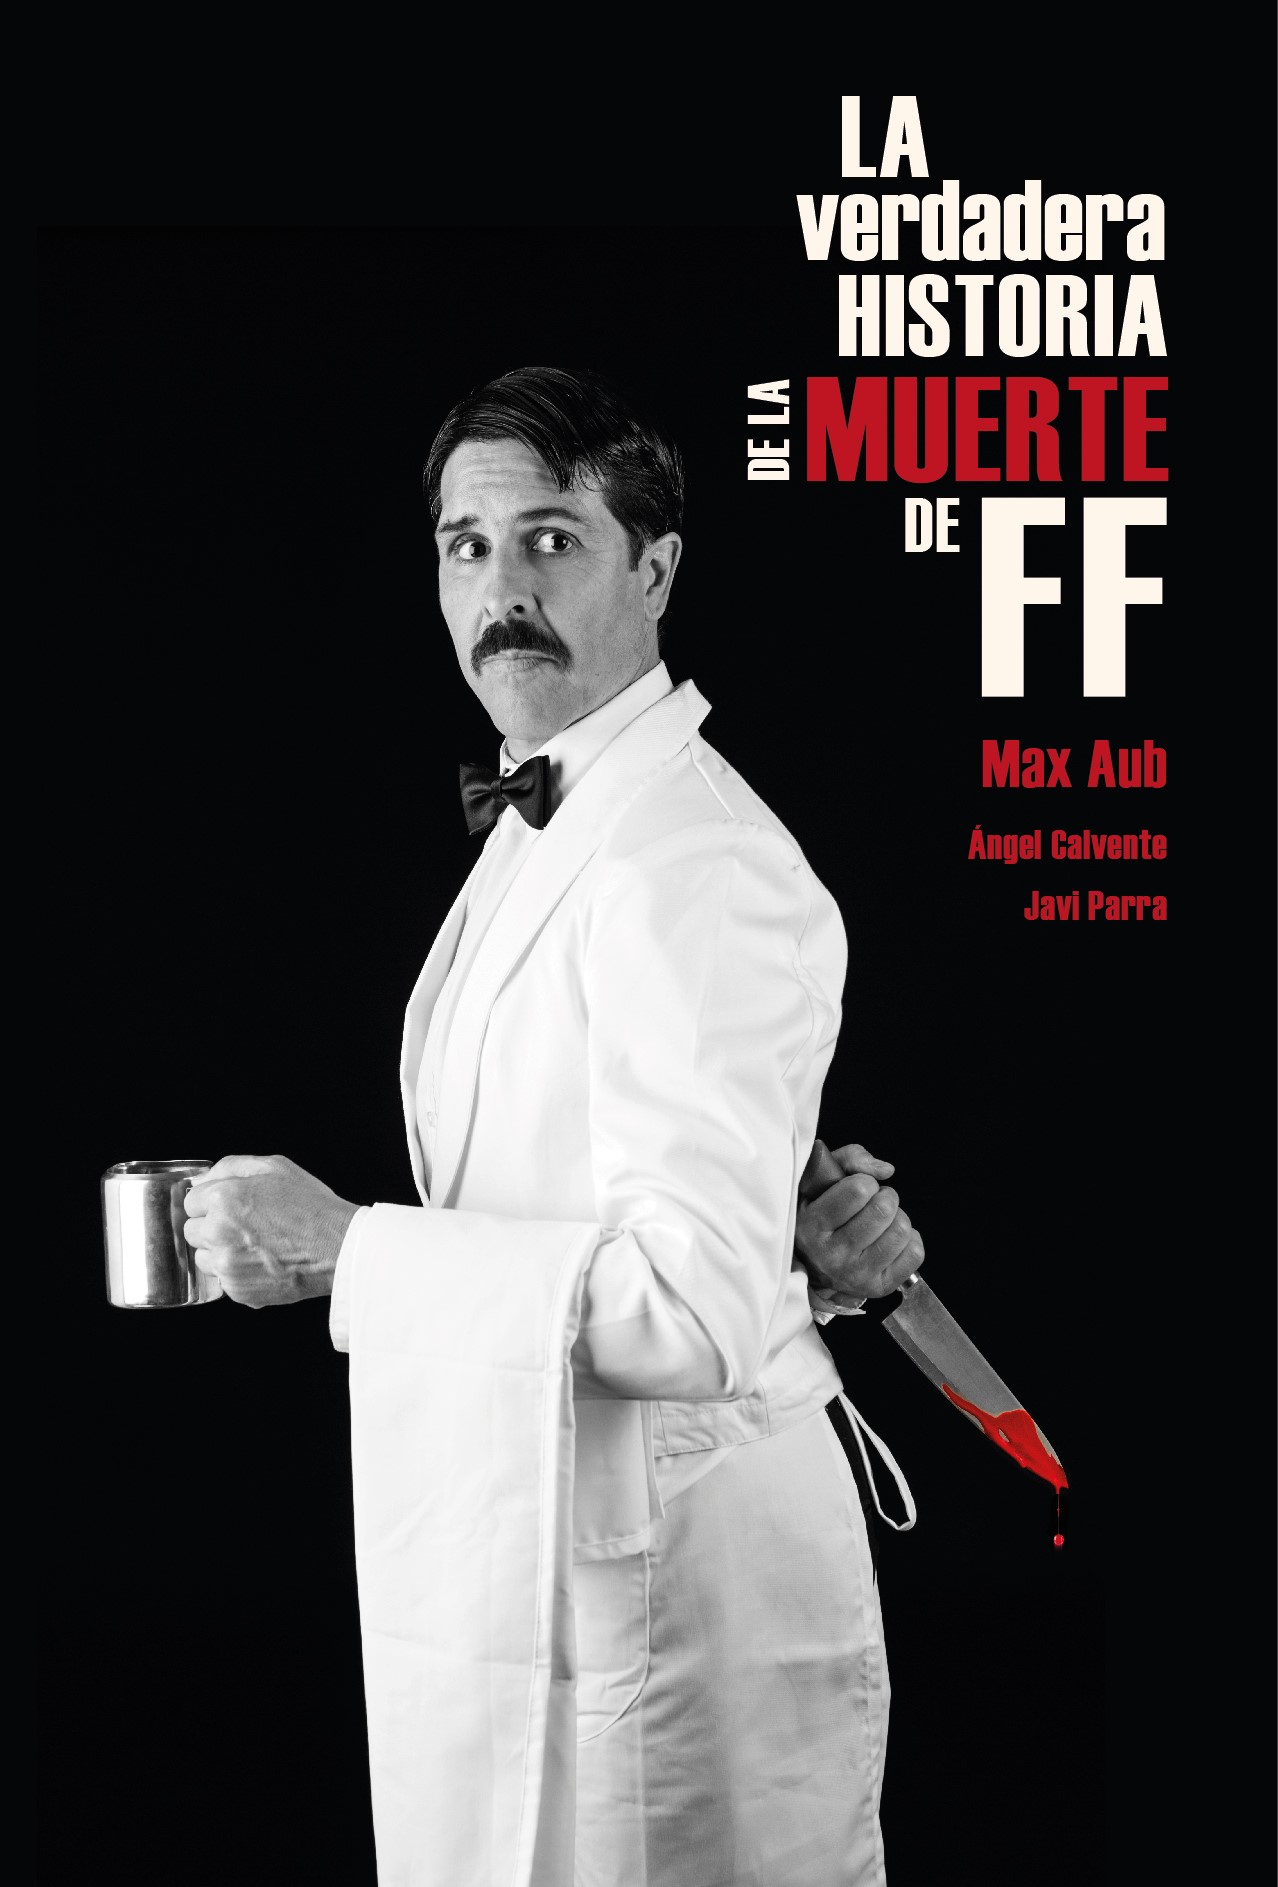 ‘La verdadera historia de FF’, de Max Aub, se estrena en el Teatro Alhambra